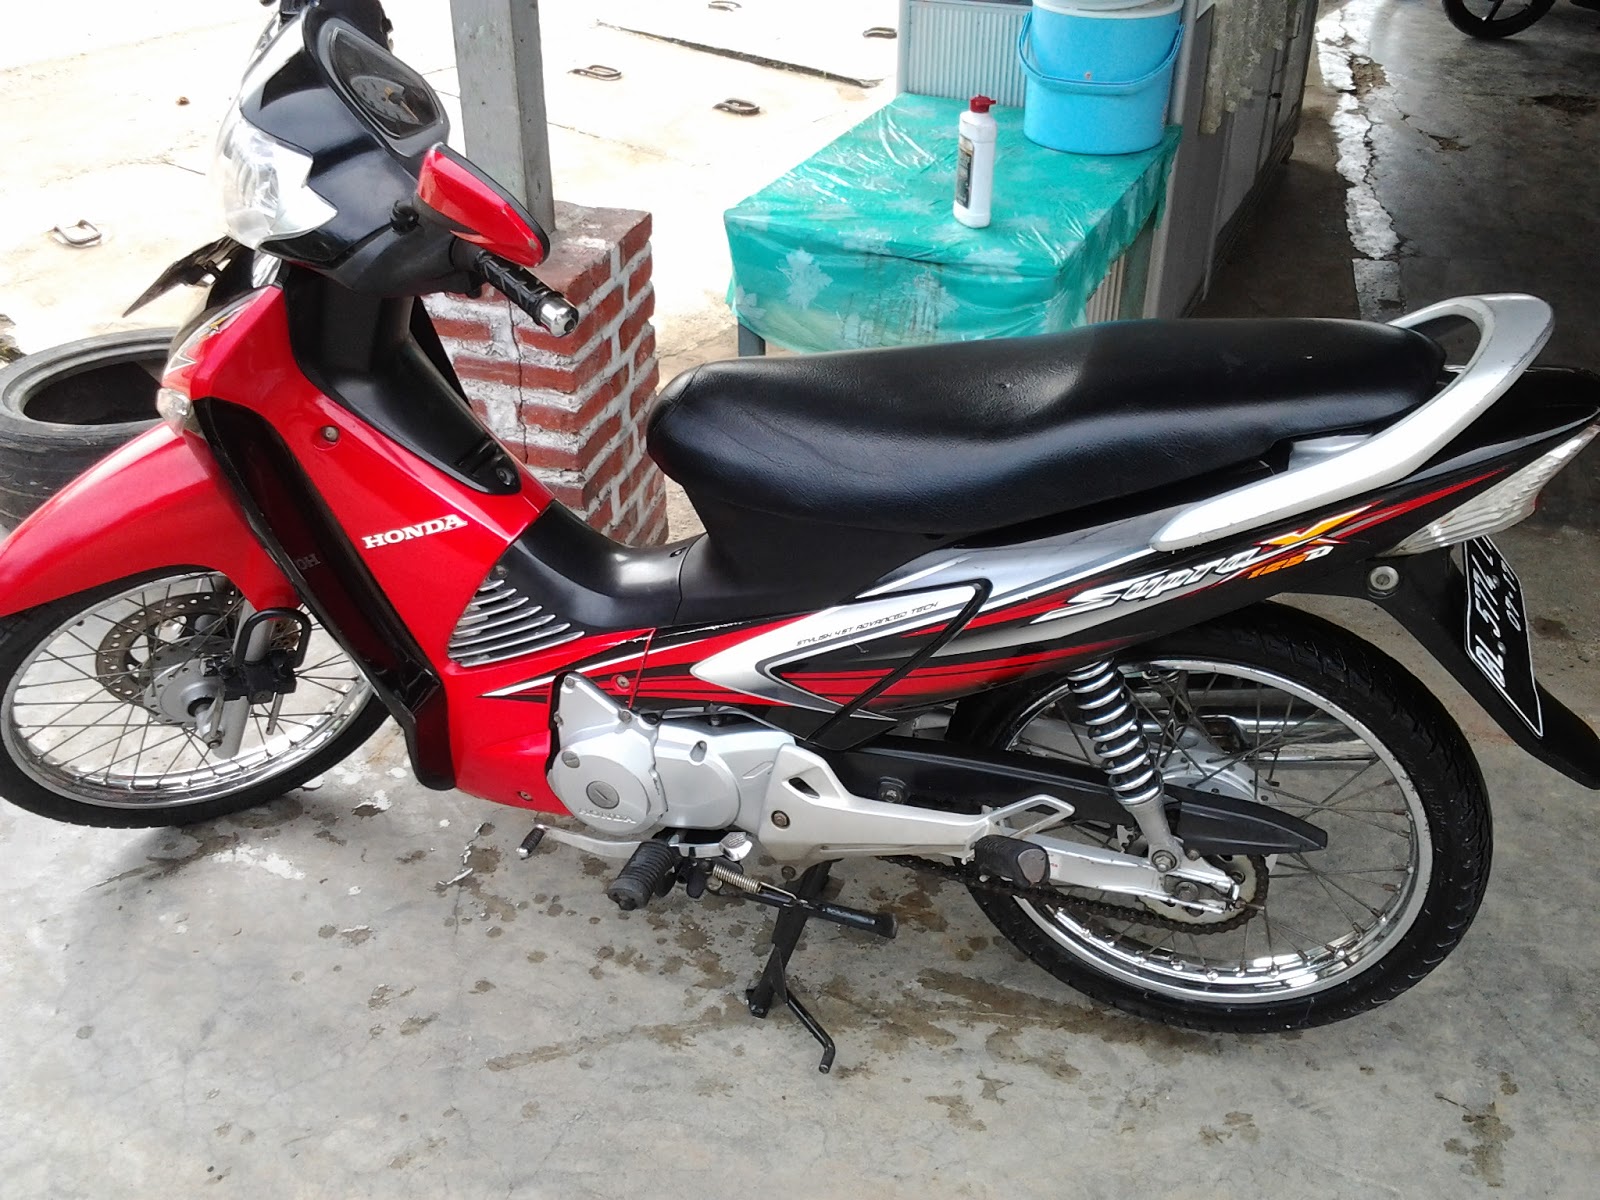 Jual sepeda motor  bekas  seputaran Banda Aceh Desember 2012